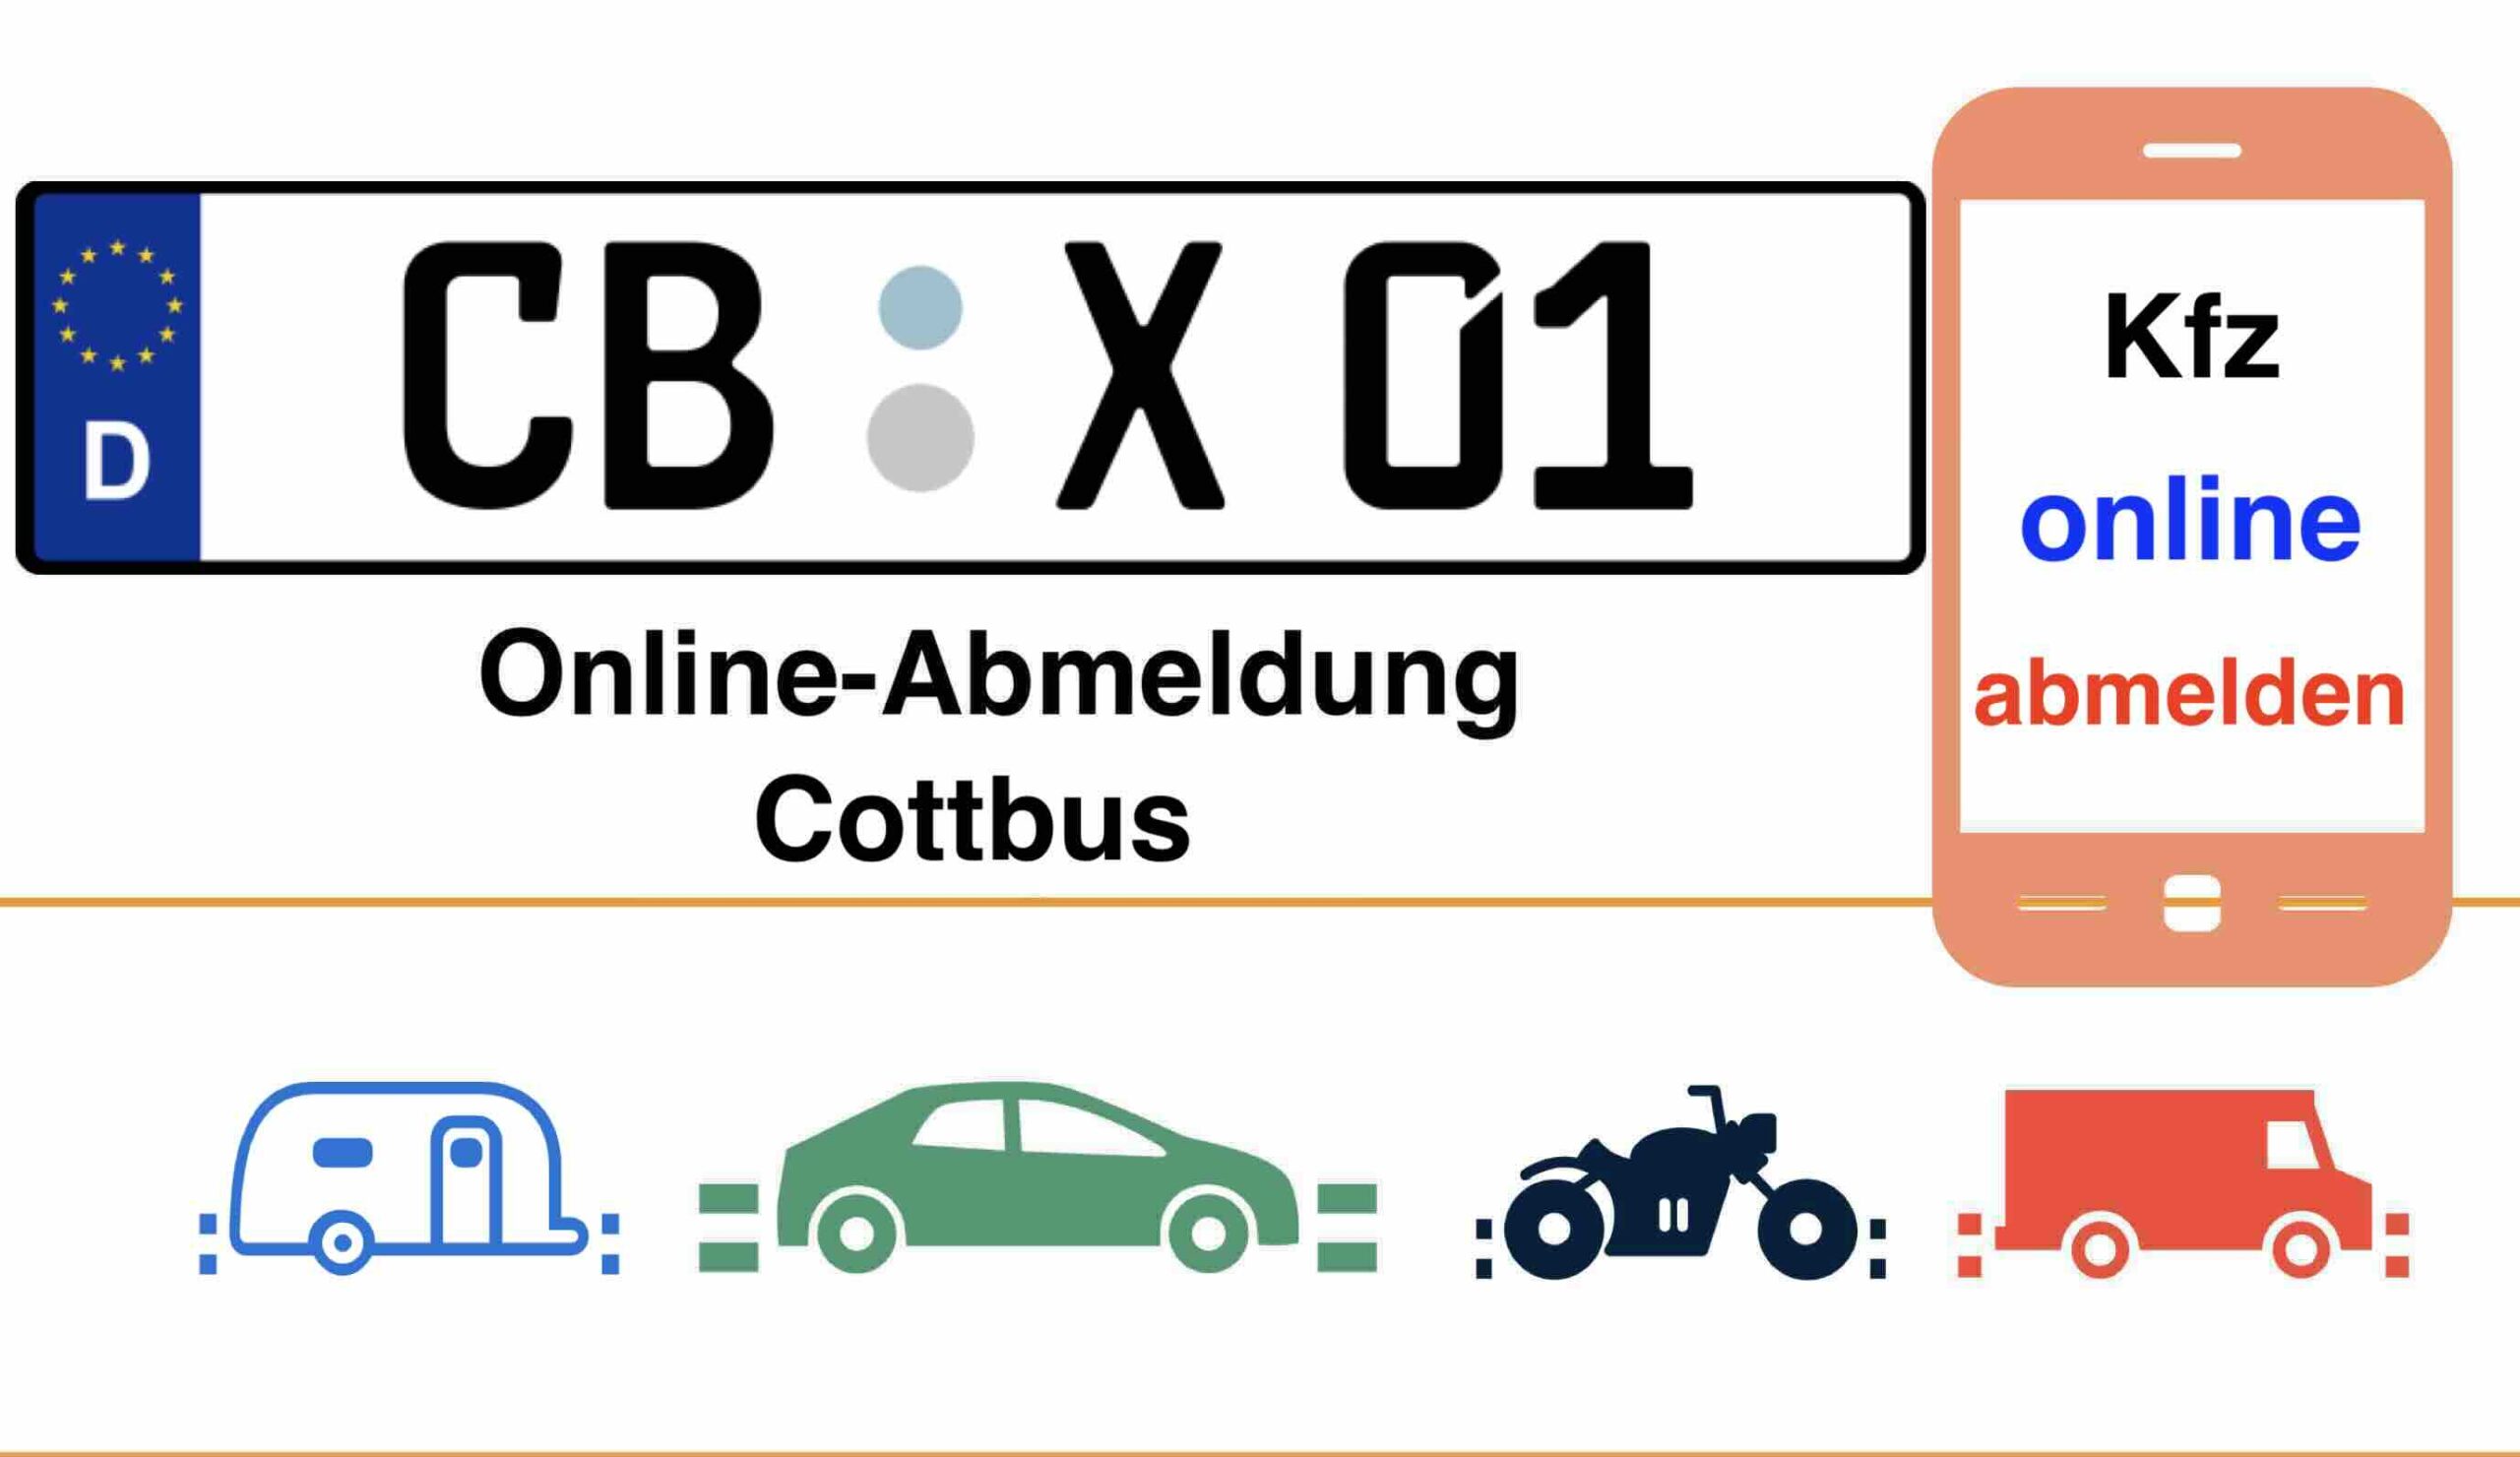 Online-Abmeldung in Cottbus 